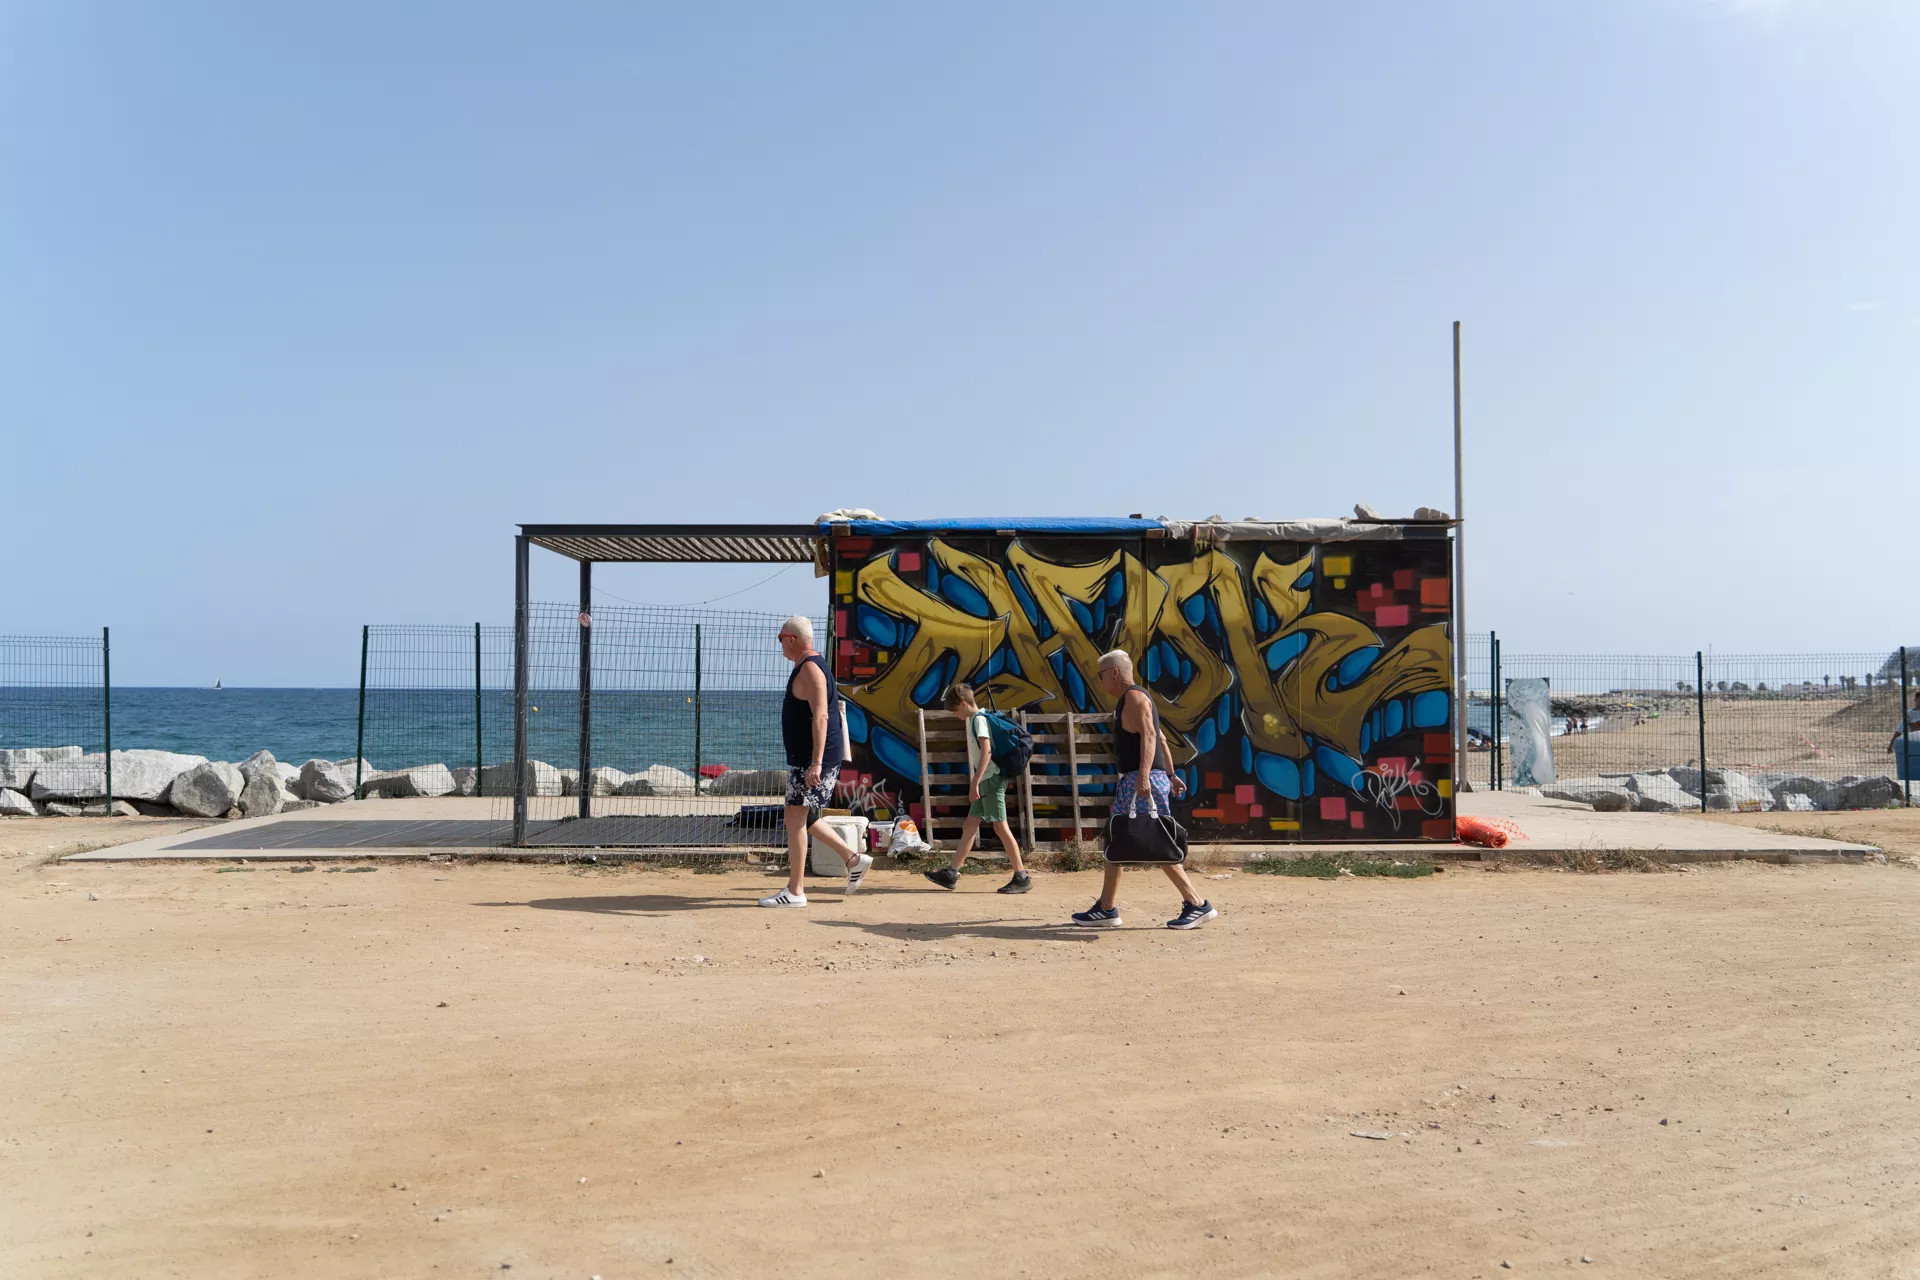 La abandonada caseta de socorrista que han retirado en la playa de Sant Adrià de Besòs  / GALA ESPÍN